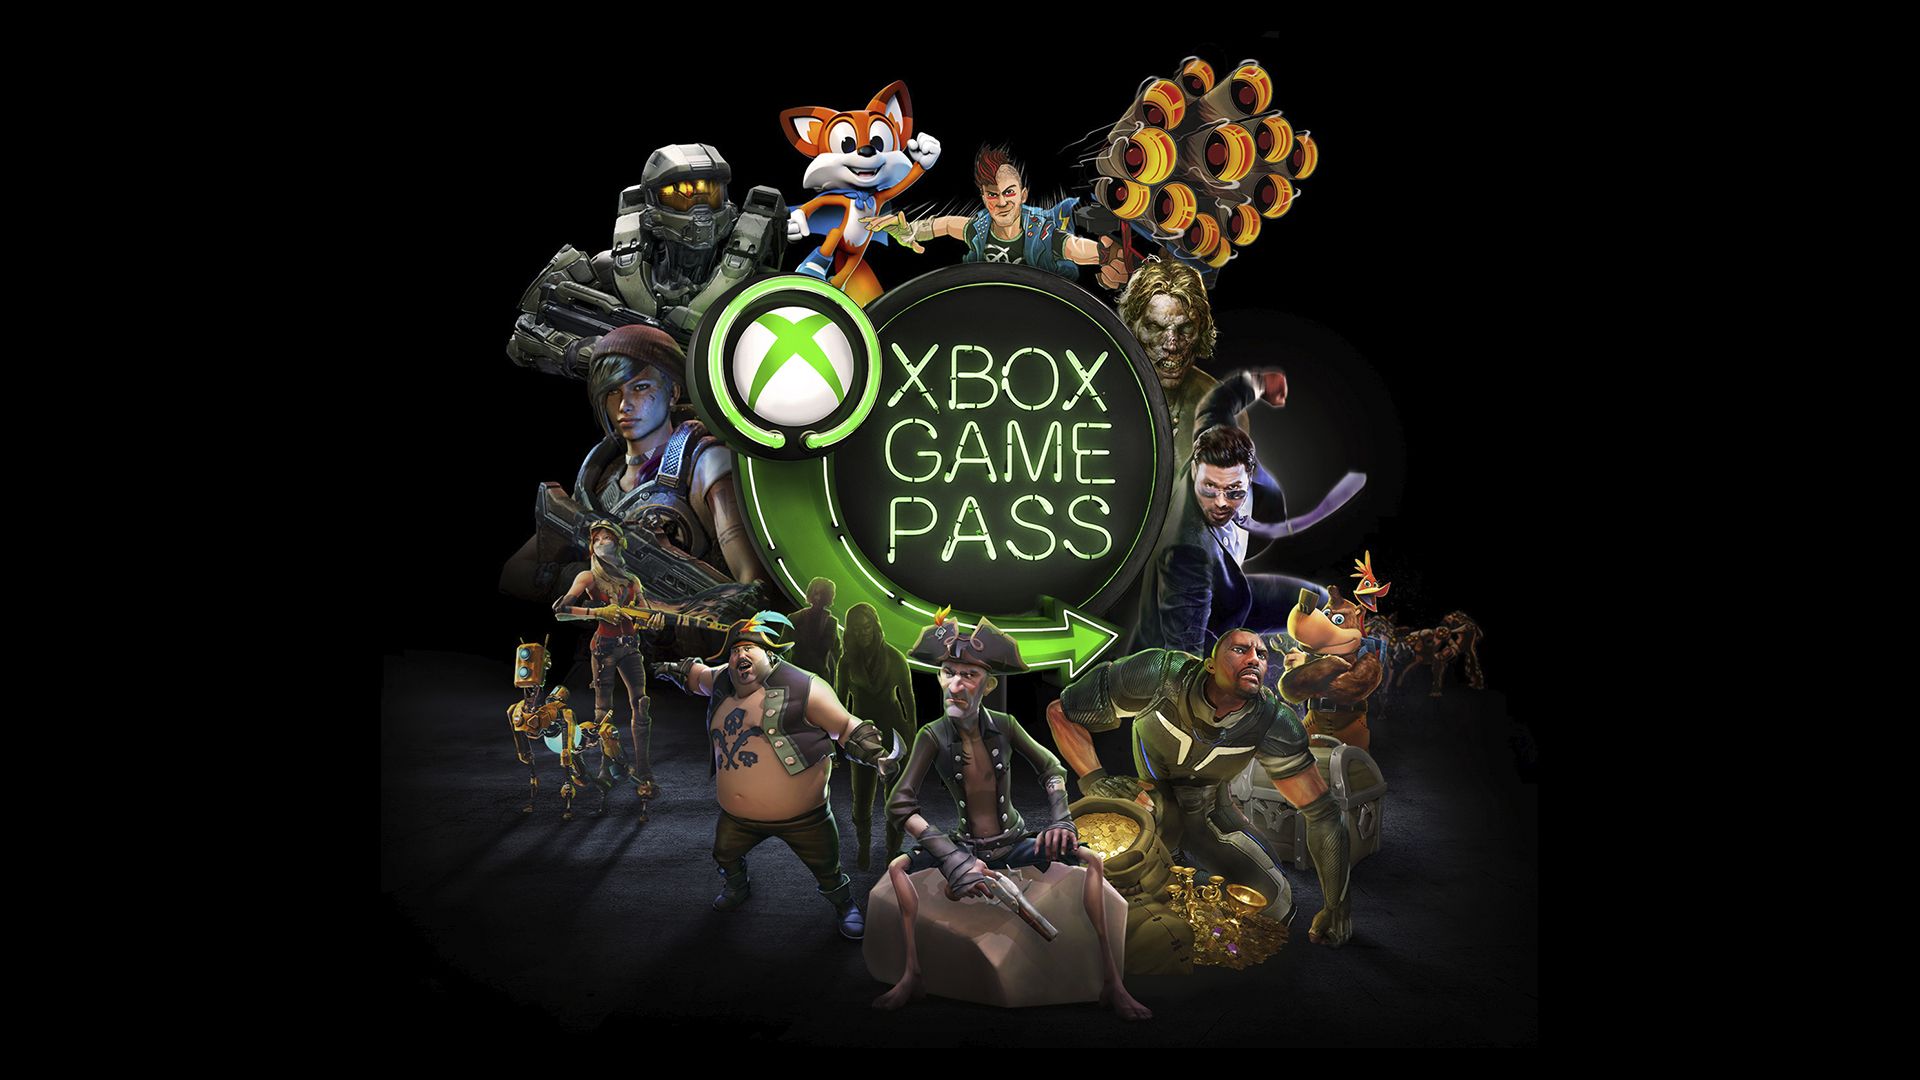 Guia do Xbox Series X: especificações, jogos, preço e mais